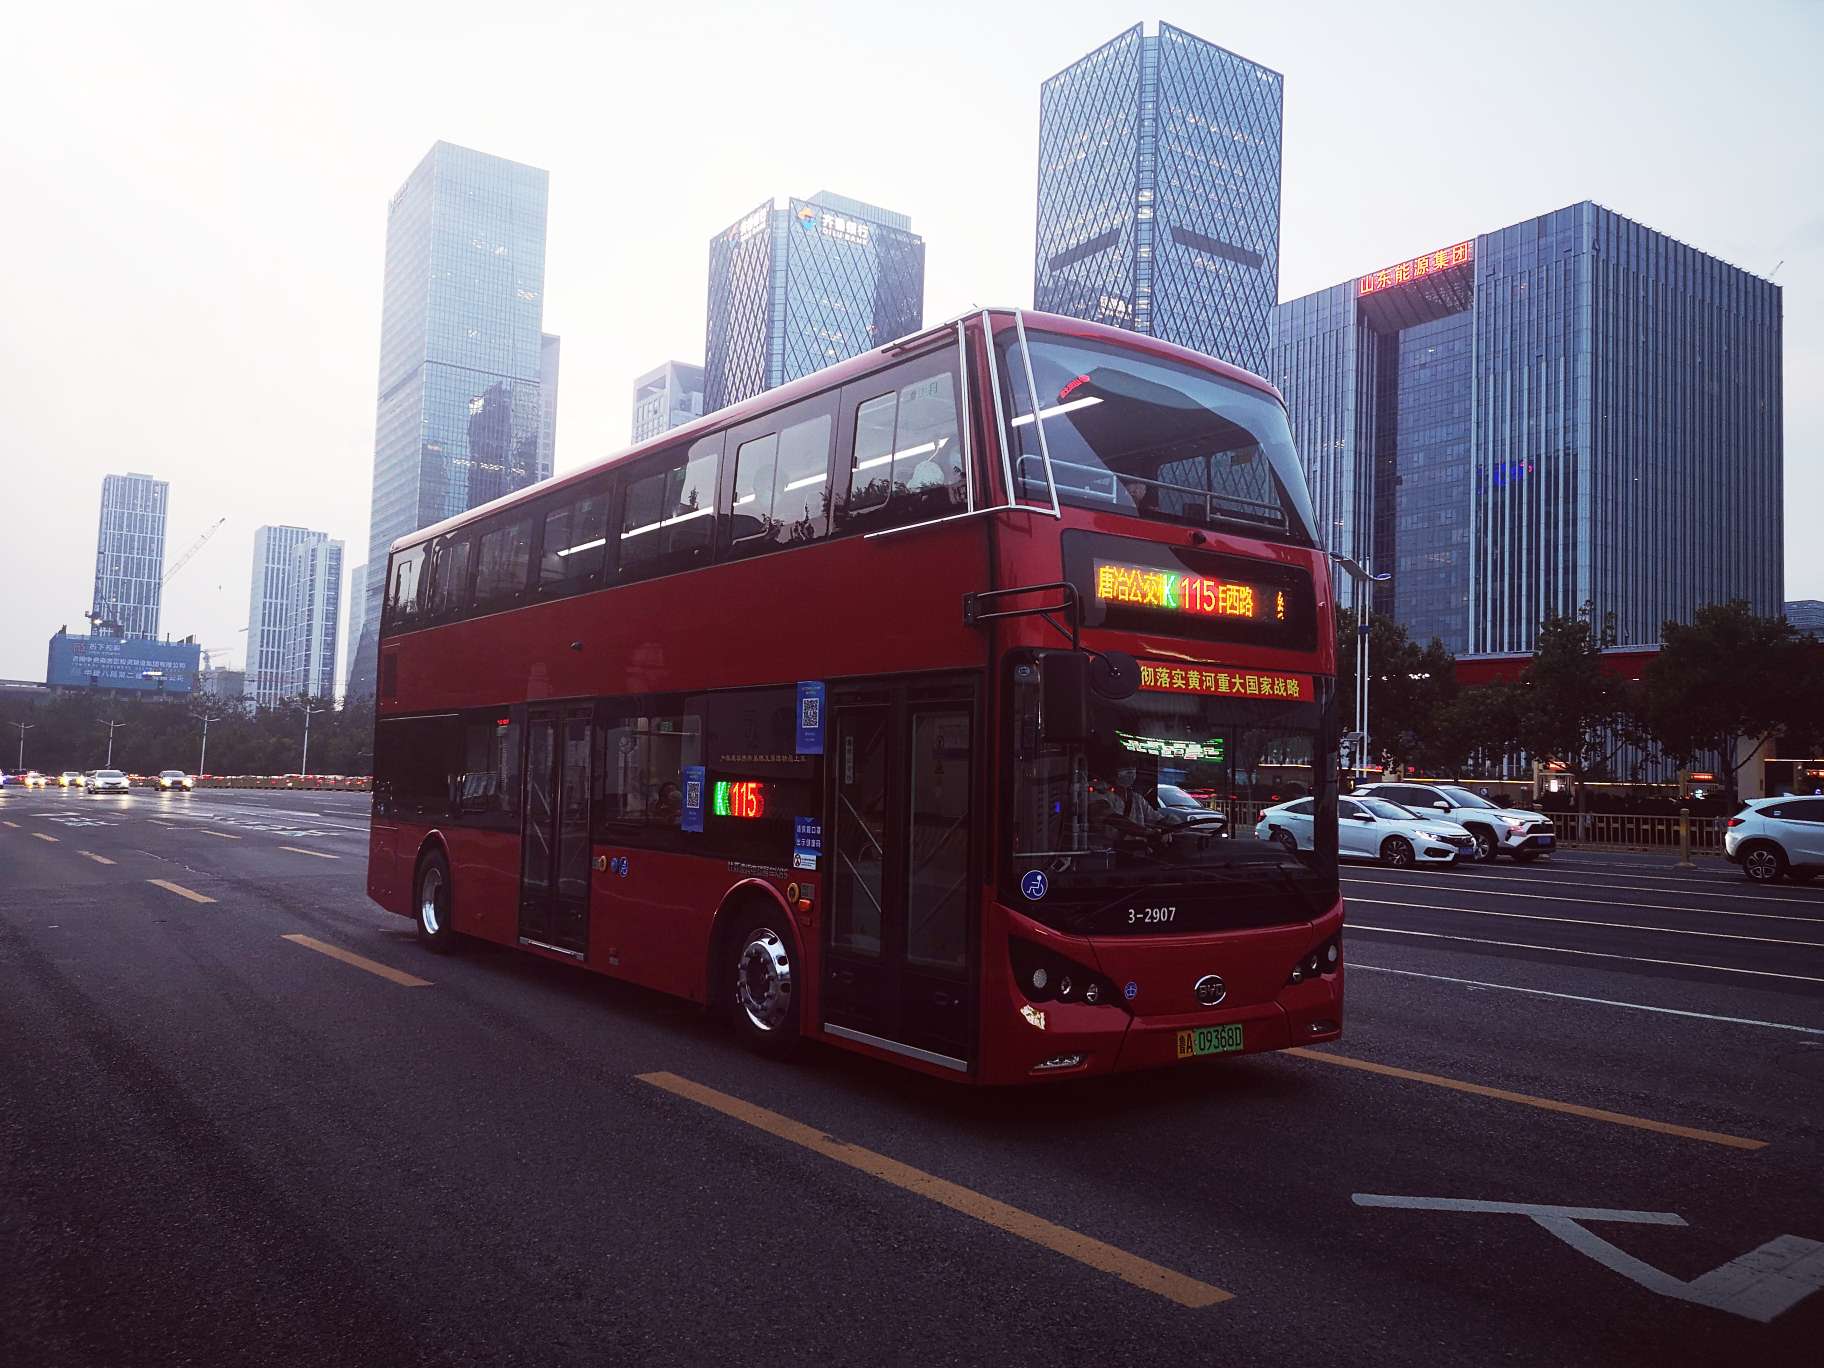 济南经十路上跑起了红色双层公交车  靓丽的风景引人驻足观赏